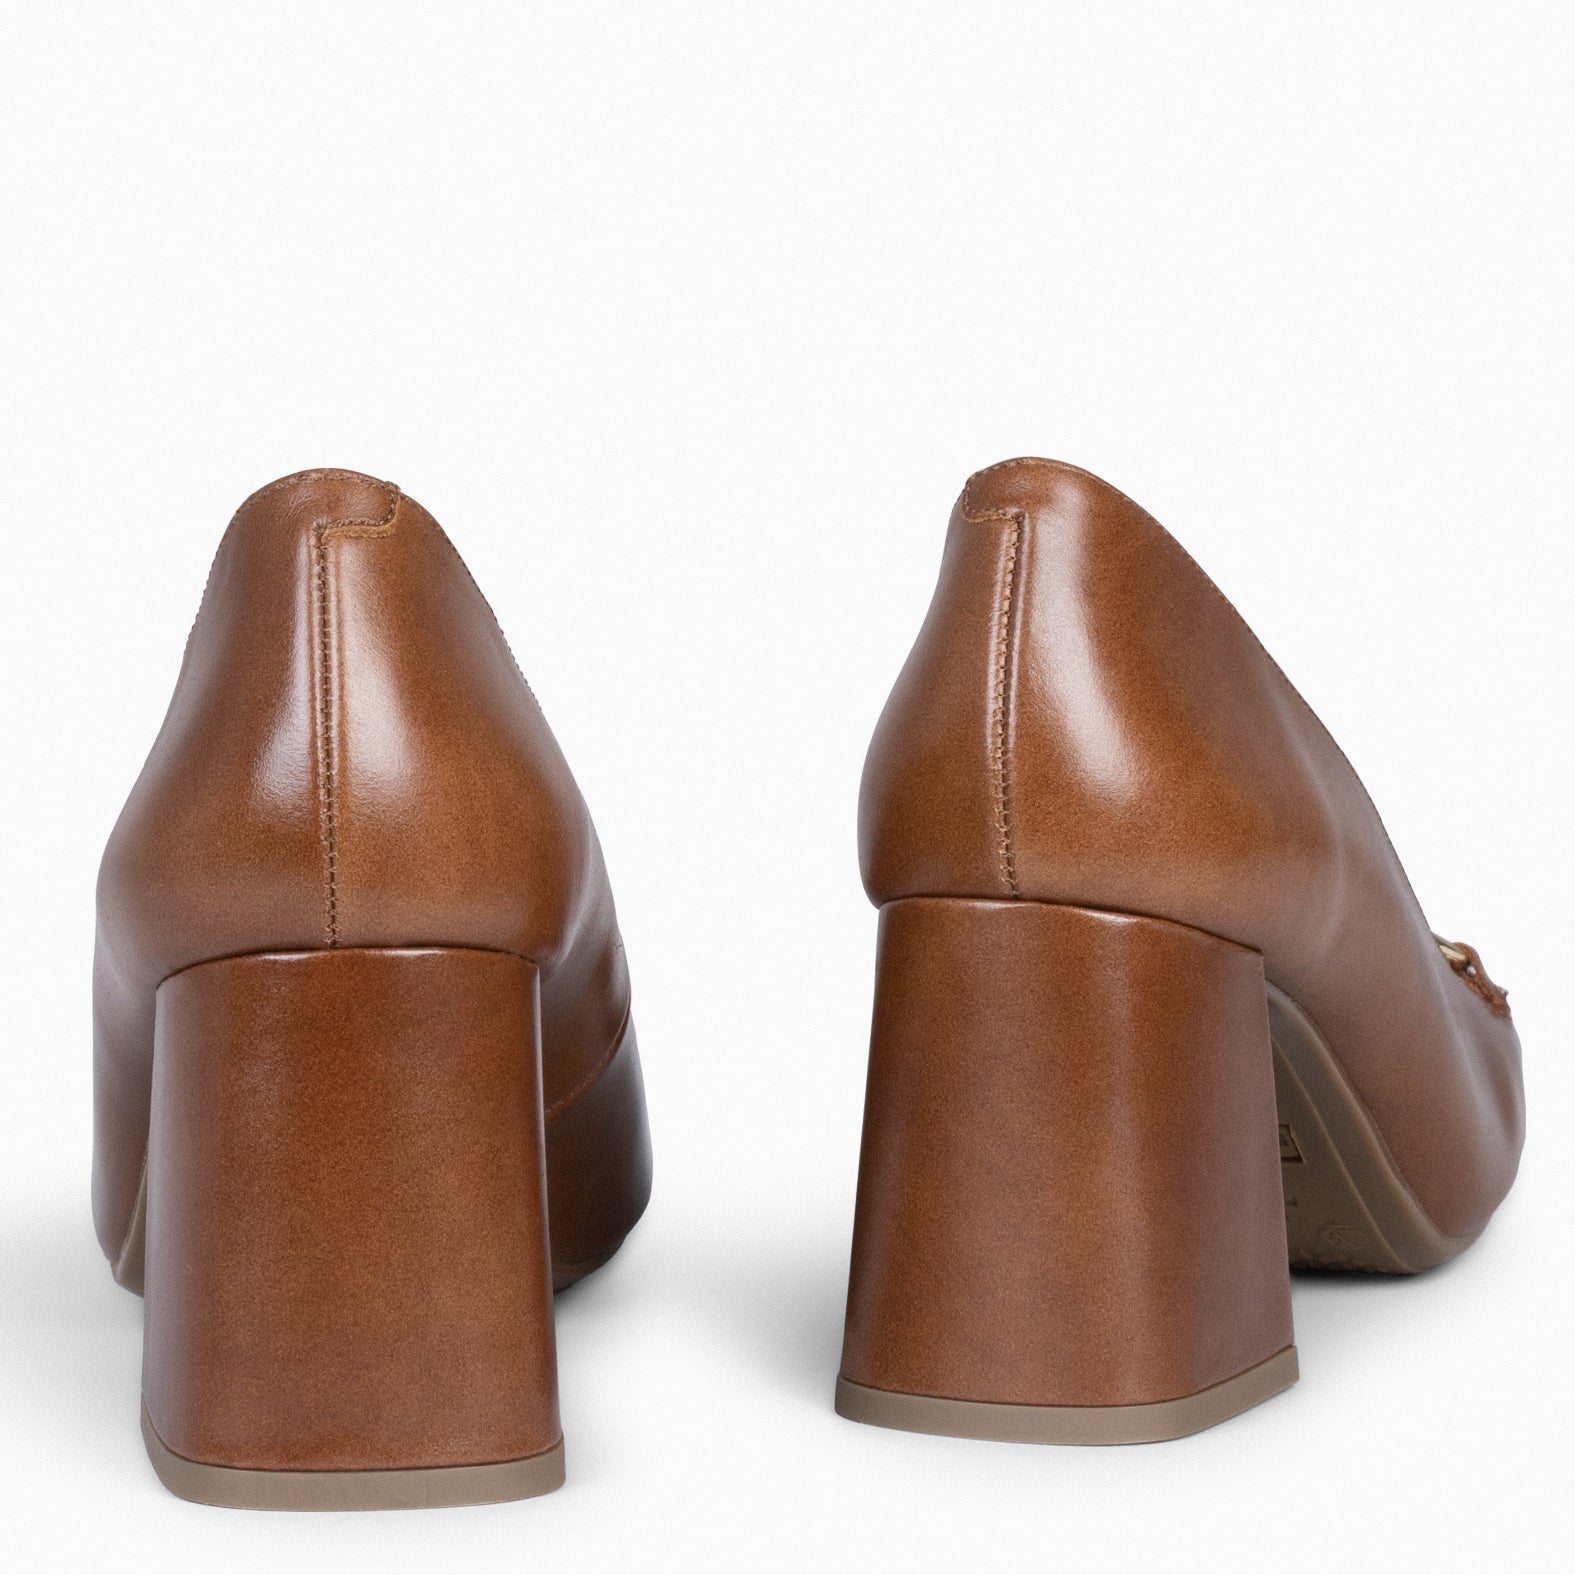 MIA – CAMEL Block heeled shoes